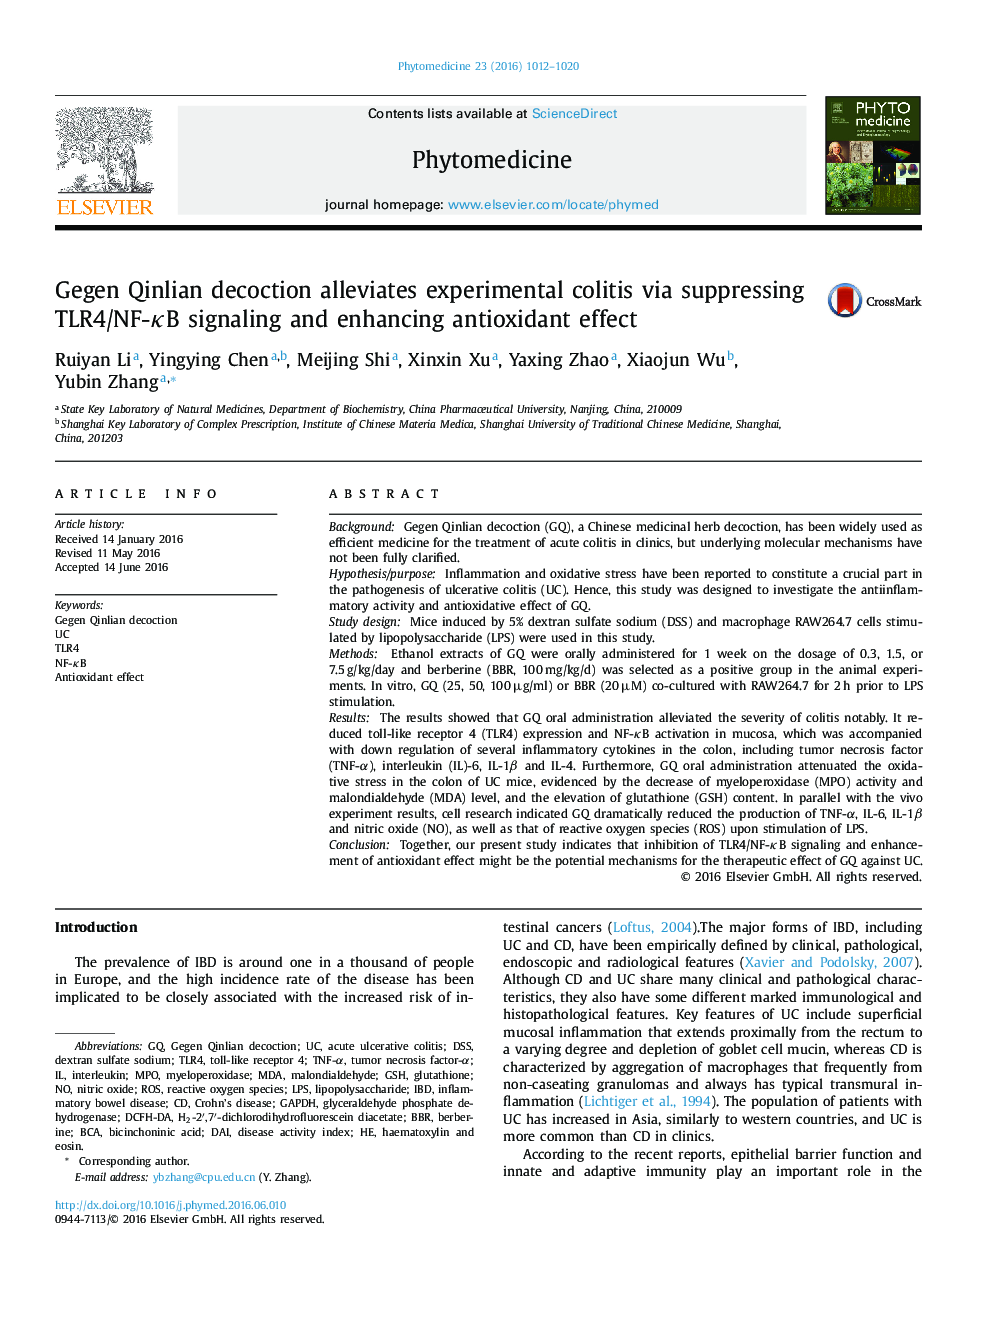 Gegen Qinlian decoction alleviates experimental colitis via suppressing TLR4/NF-κB signaling and enhancing antioxidant effect